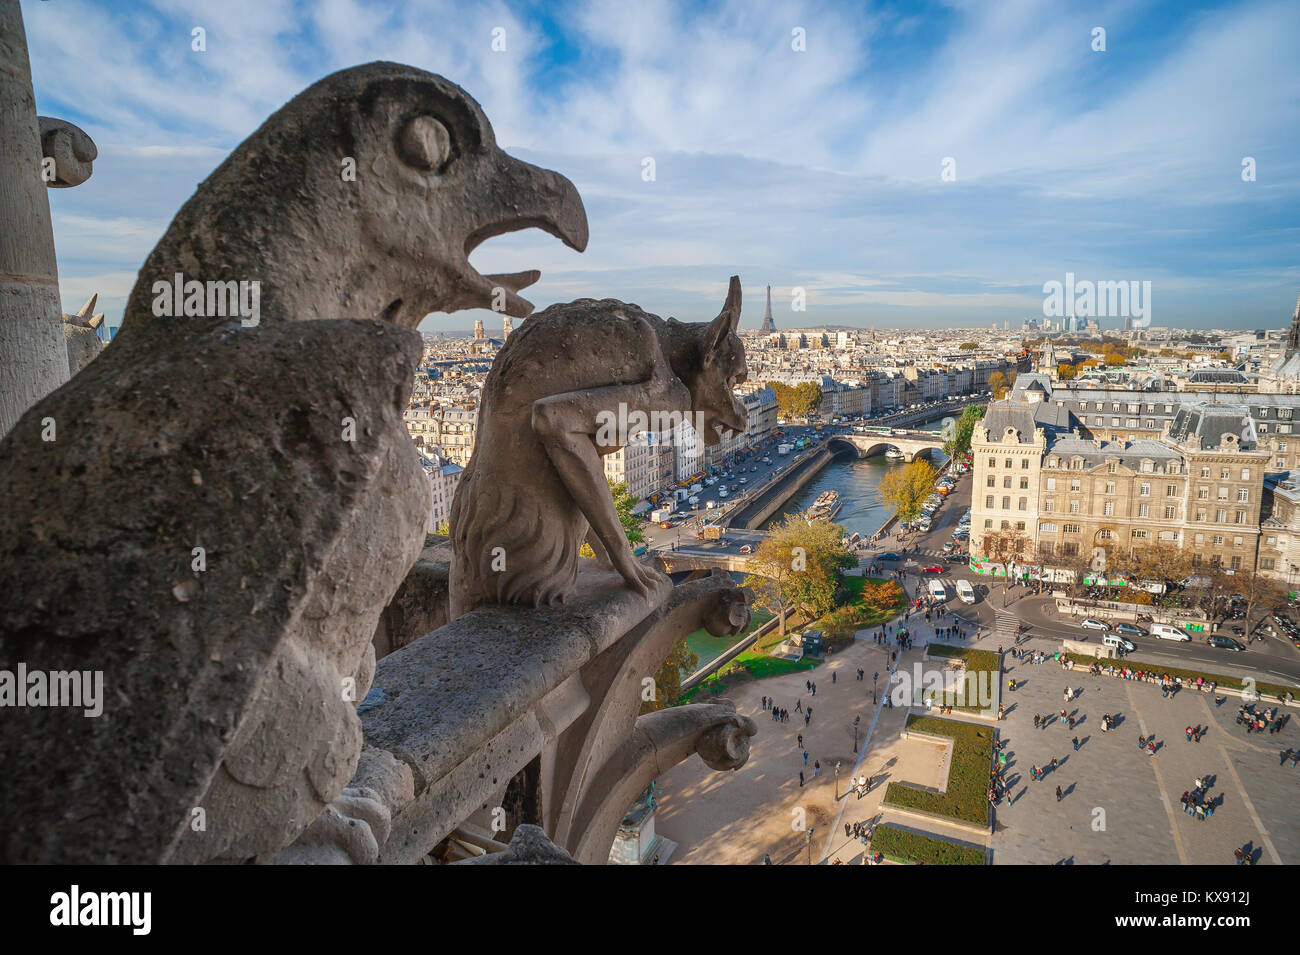 Kathedrale Notre Dame, die erhöhten Blick von der Kathedrale West Tower Galerie eines gargoyle und ein Adler mit Blick auf die Stadt Paris, Frankreich. Stockfoto